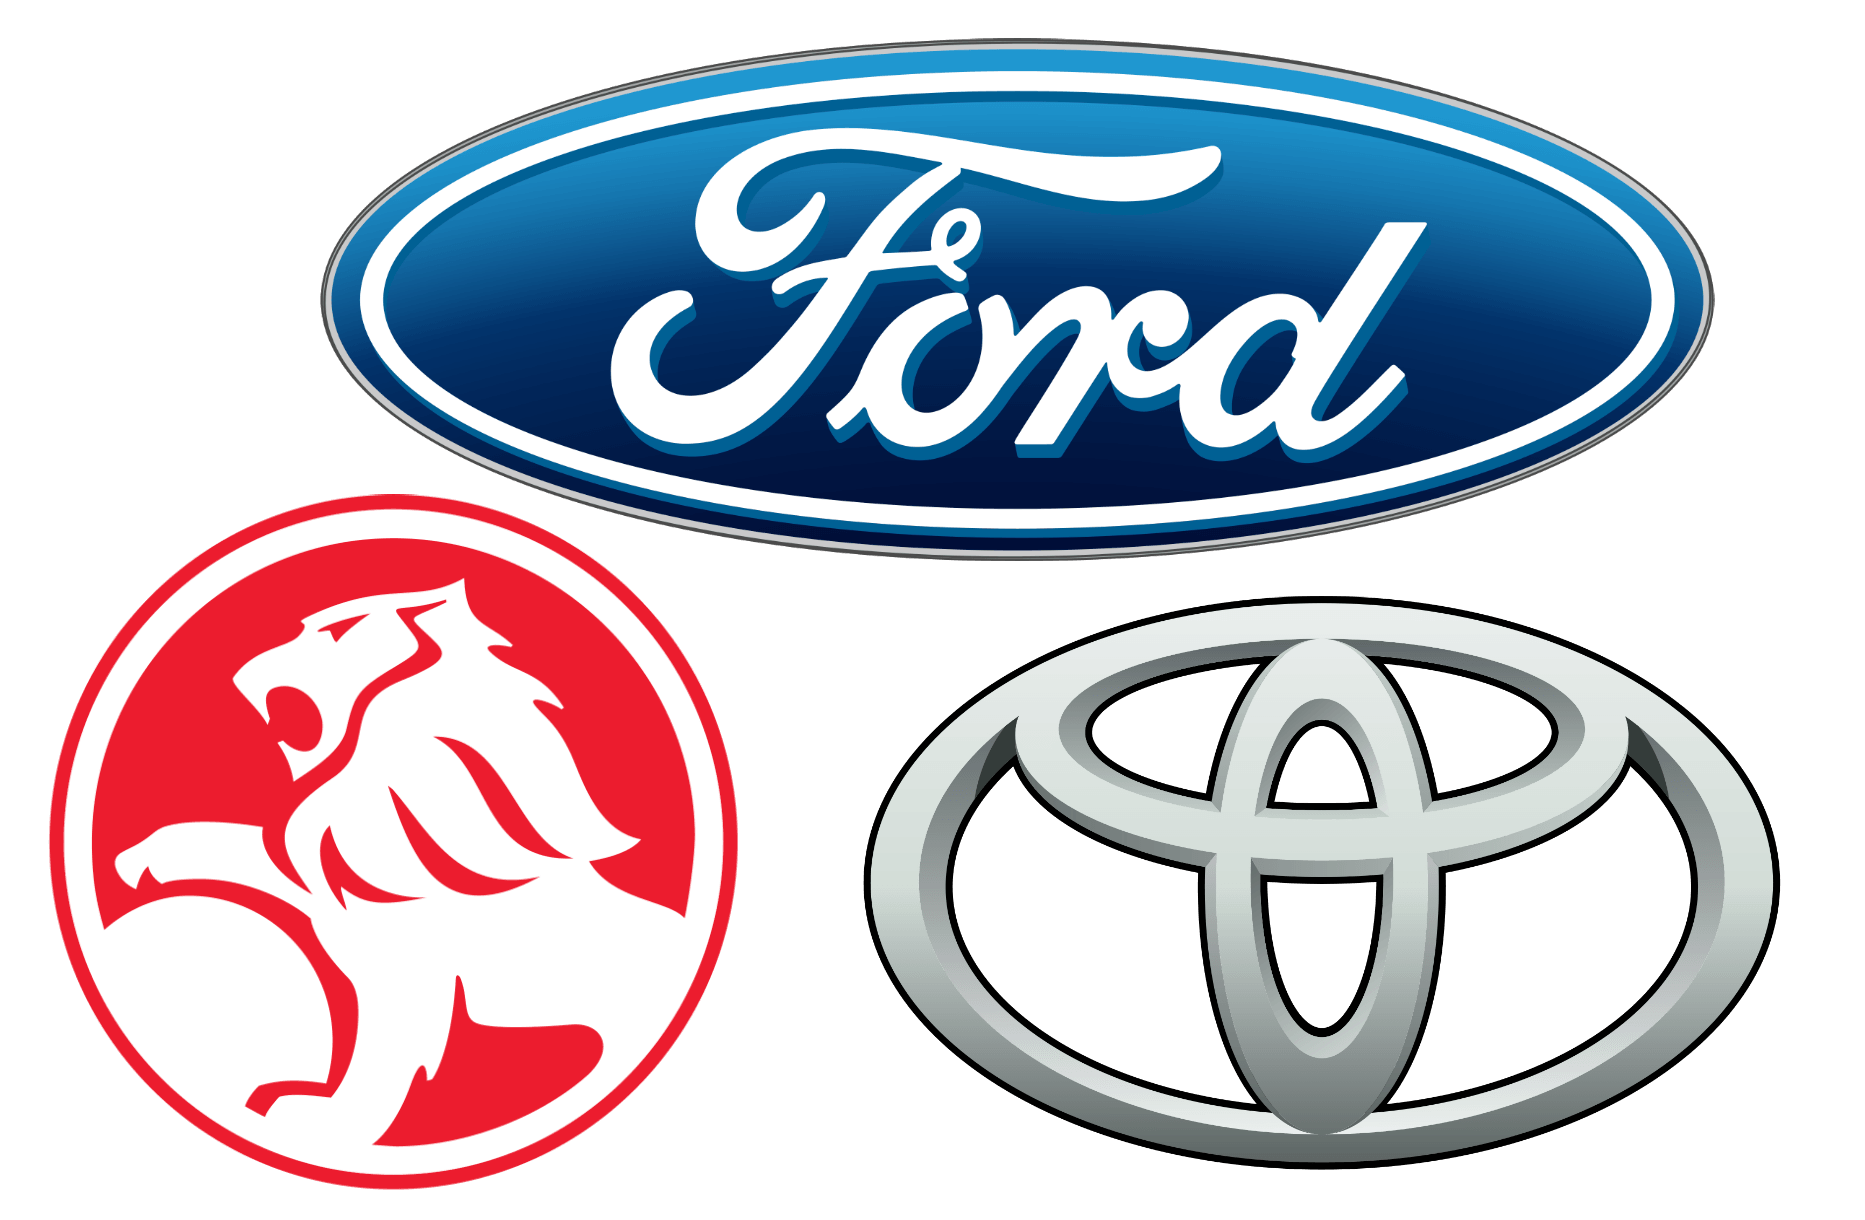 Foreign Car Manufacturers Logo - Australian Car Brands, Companies and Manufacturers | Car Brand Names.com